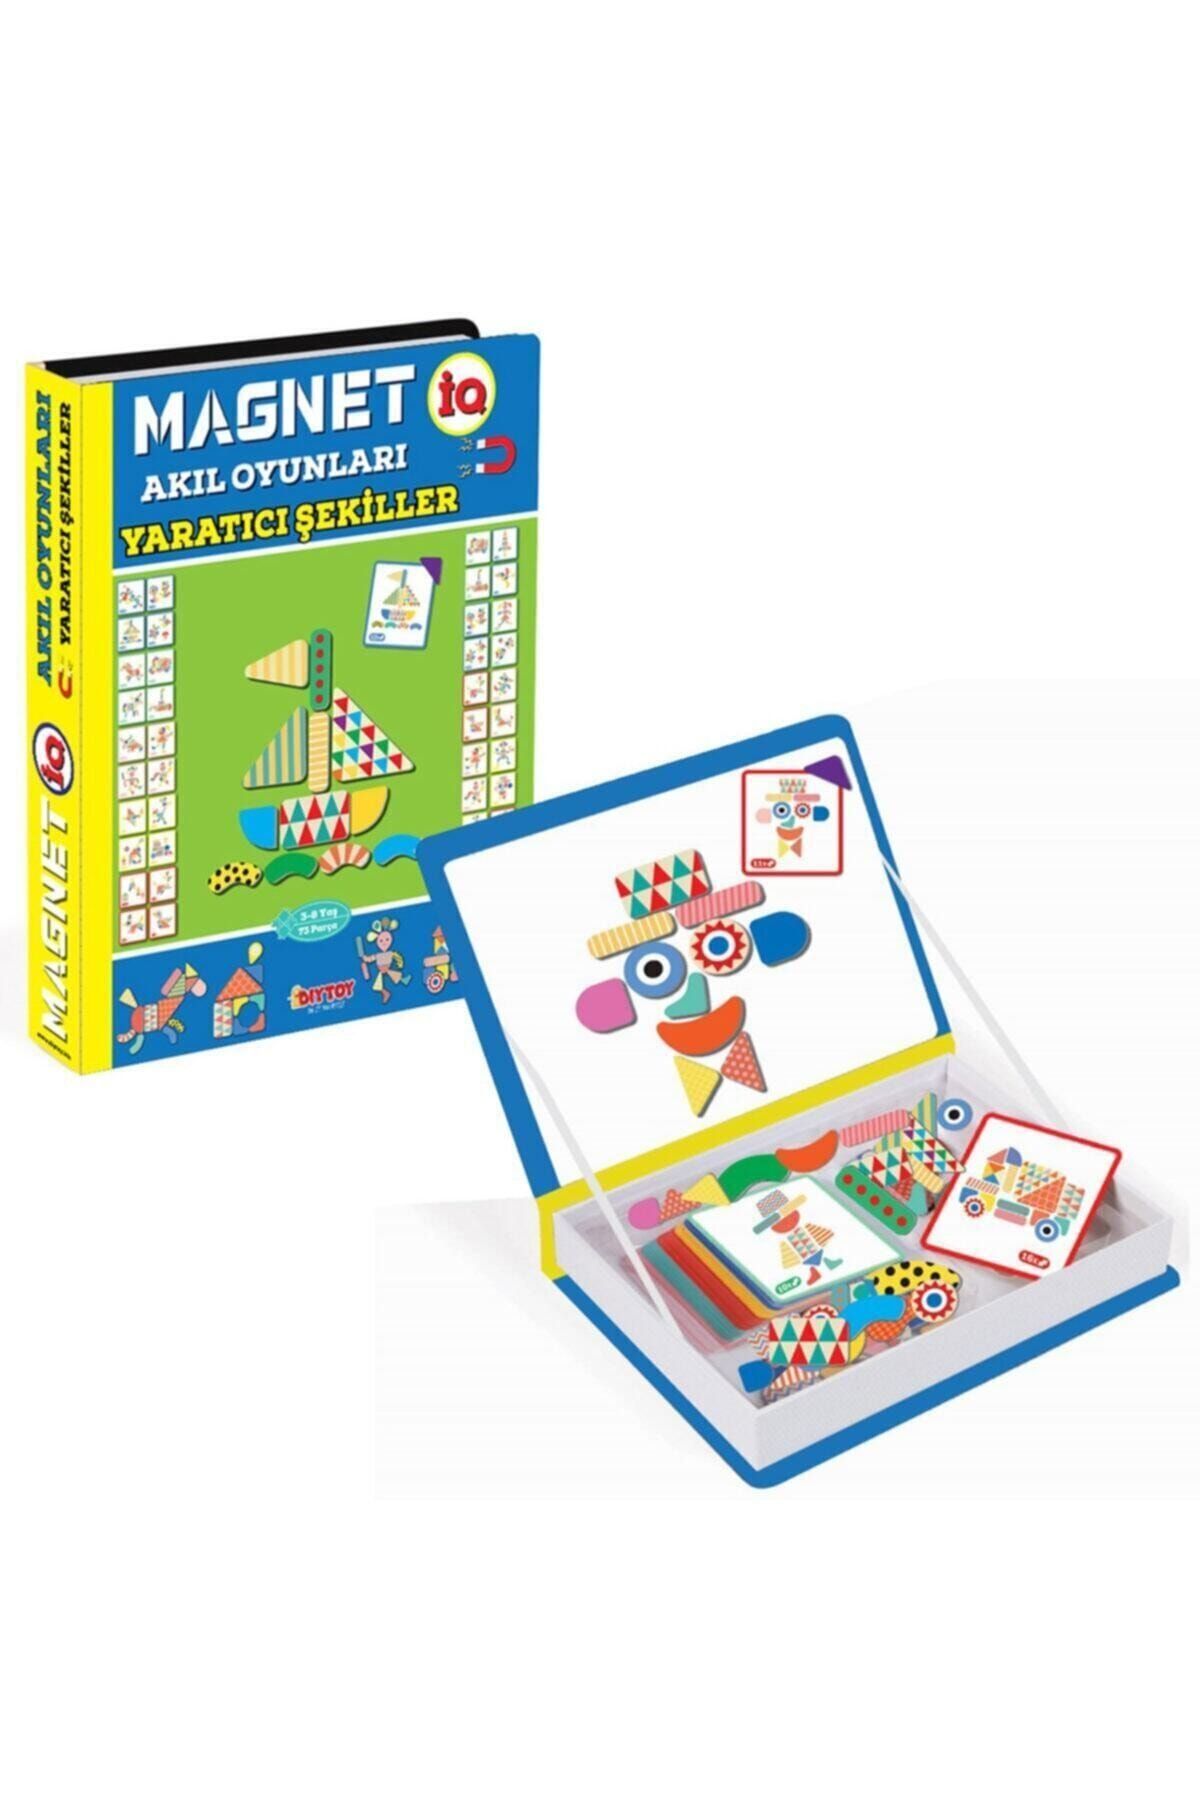 Diytoy Manyetik Magnet Iq Akıl Oyunları Yaratıcı Şekiller Manyetik Puzzle